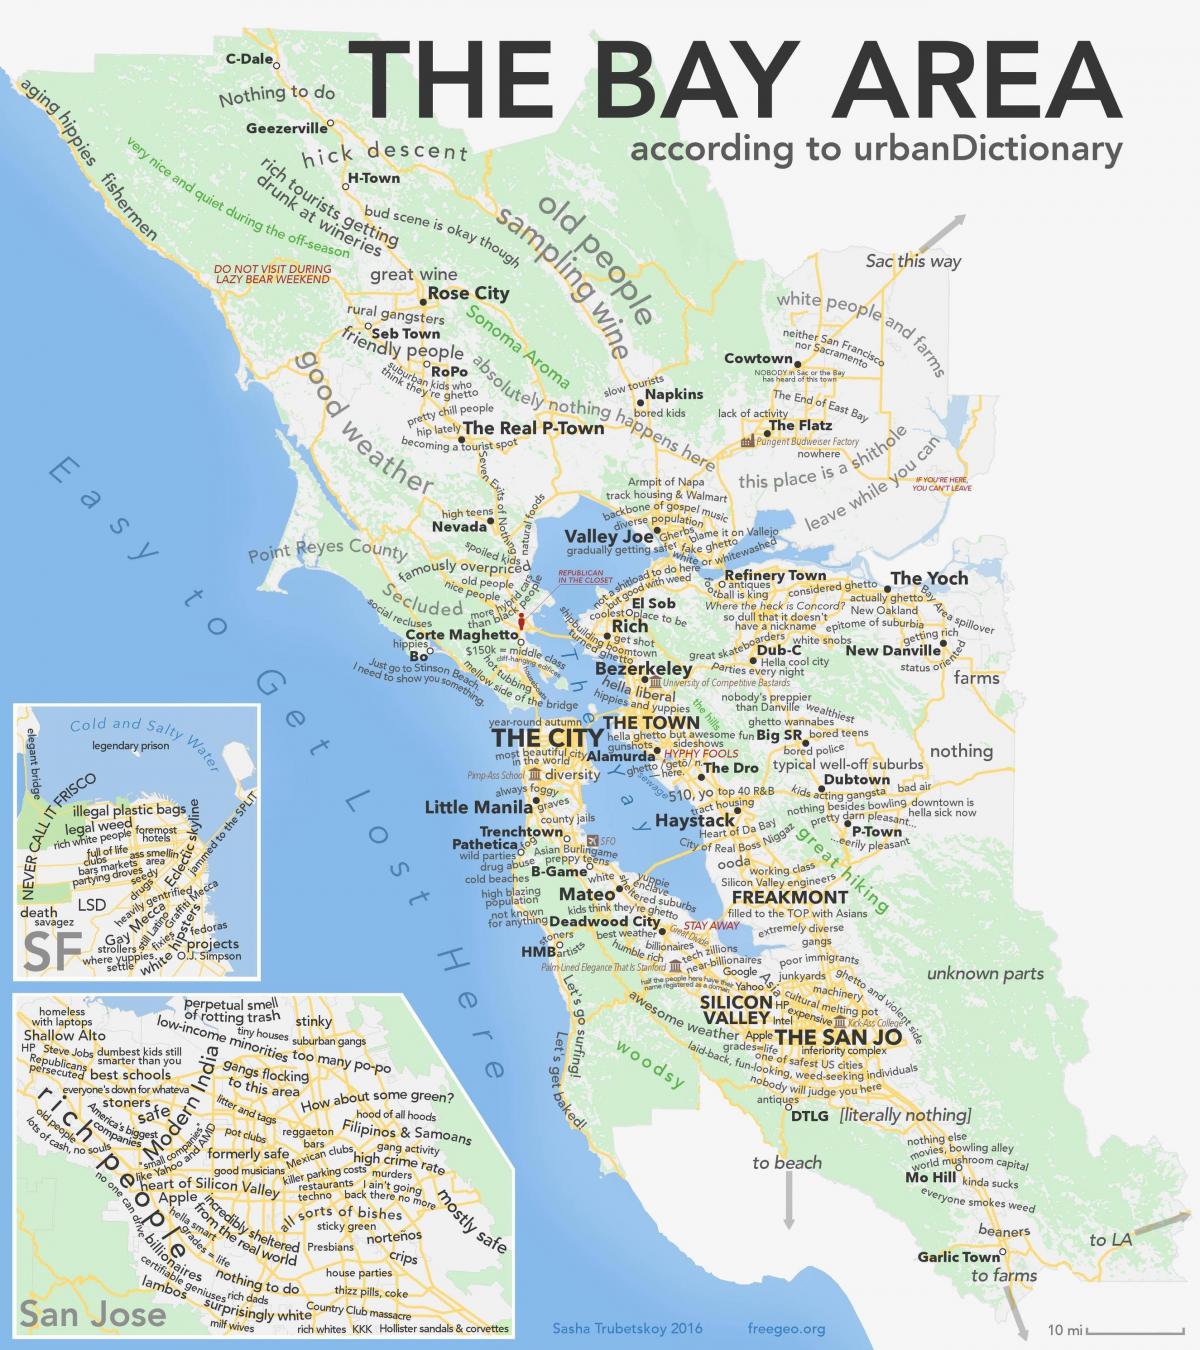 샌프란시스코 베이 지역의 캘리포니아 지도